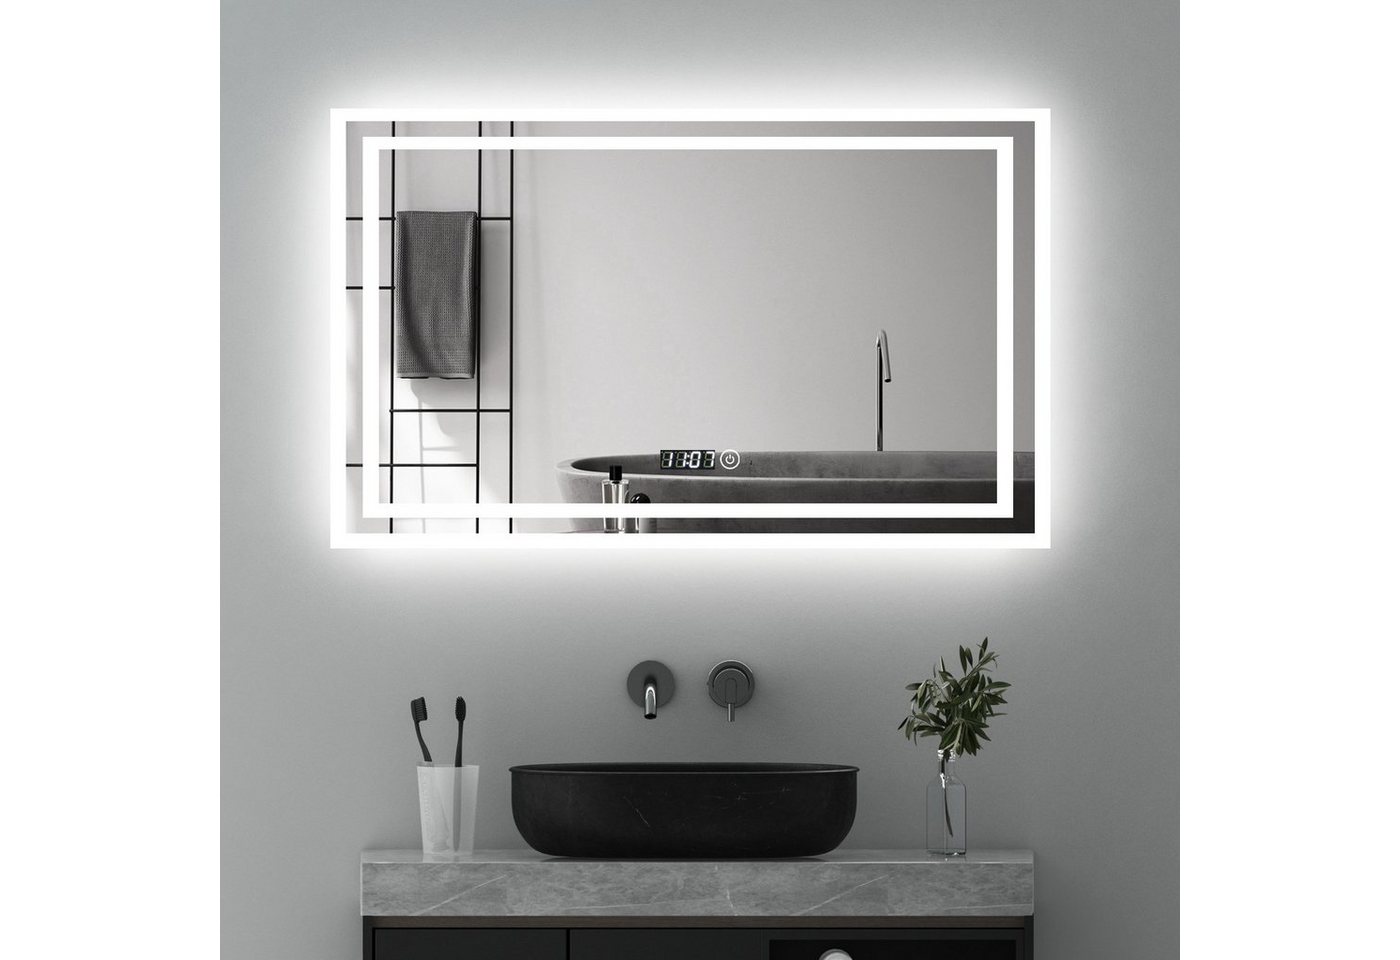 WDWRITTI Badspiegel mit Beleuchtung und Uhr Touch Spiegel groß Wandspiegel Led 100x60 (Speicherfunktion, 3Lichtfarben, Helligkeit dimmbar), HD Bleifreier Spiegel, Energiesparend, IP44 von WDWRITTI